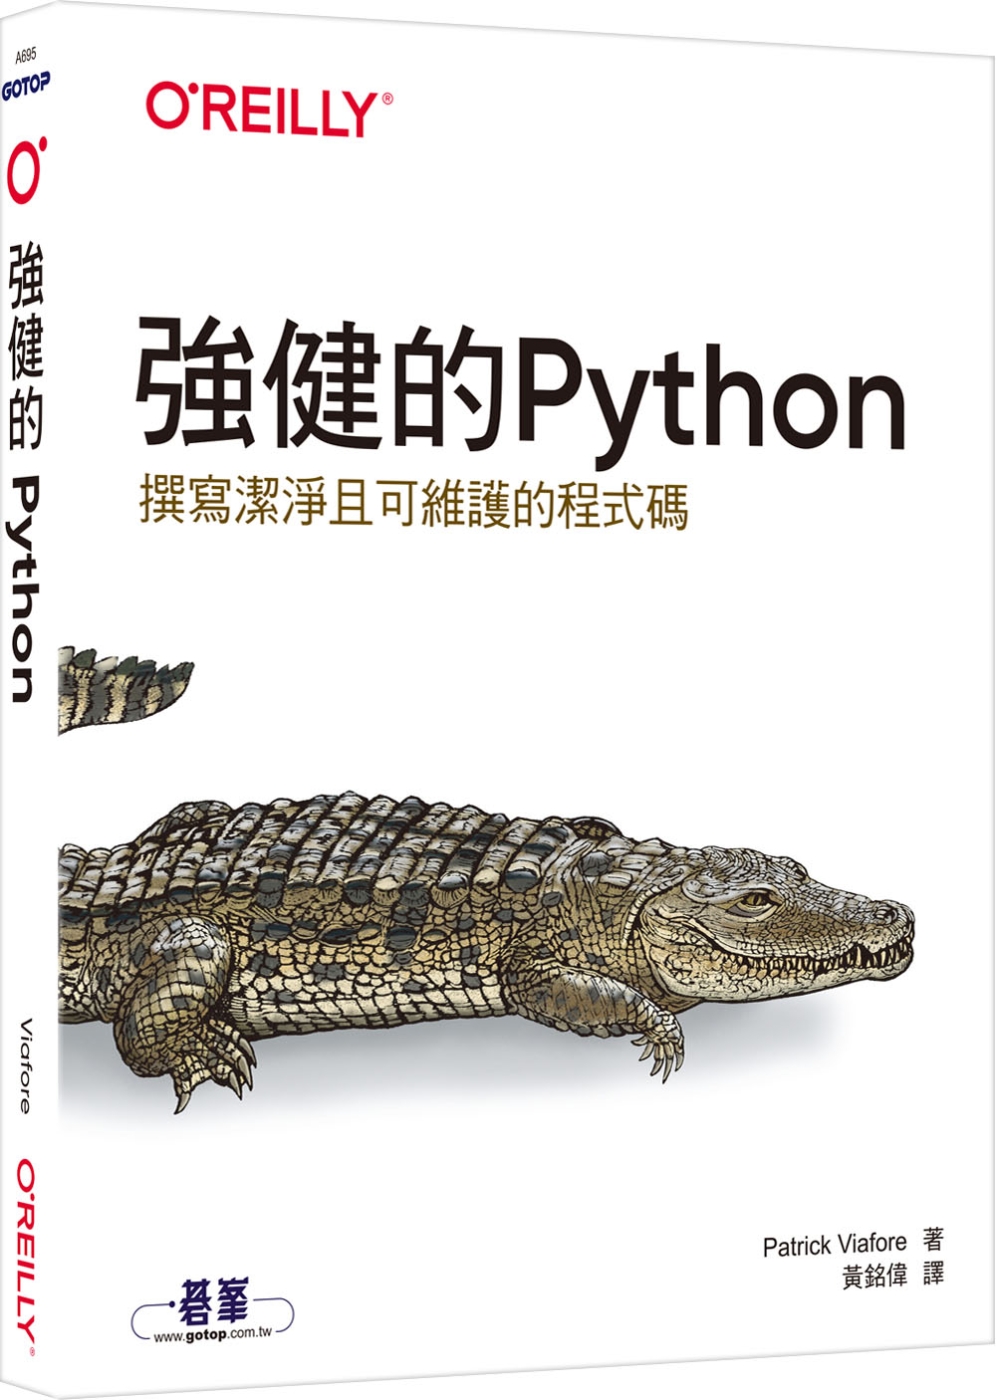 強健的Python|撰寫潔淨且可維護的程式碼